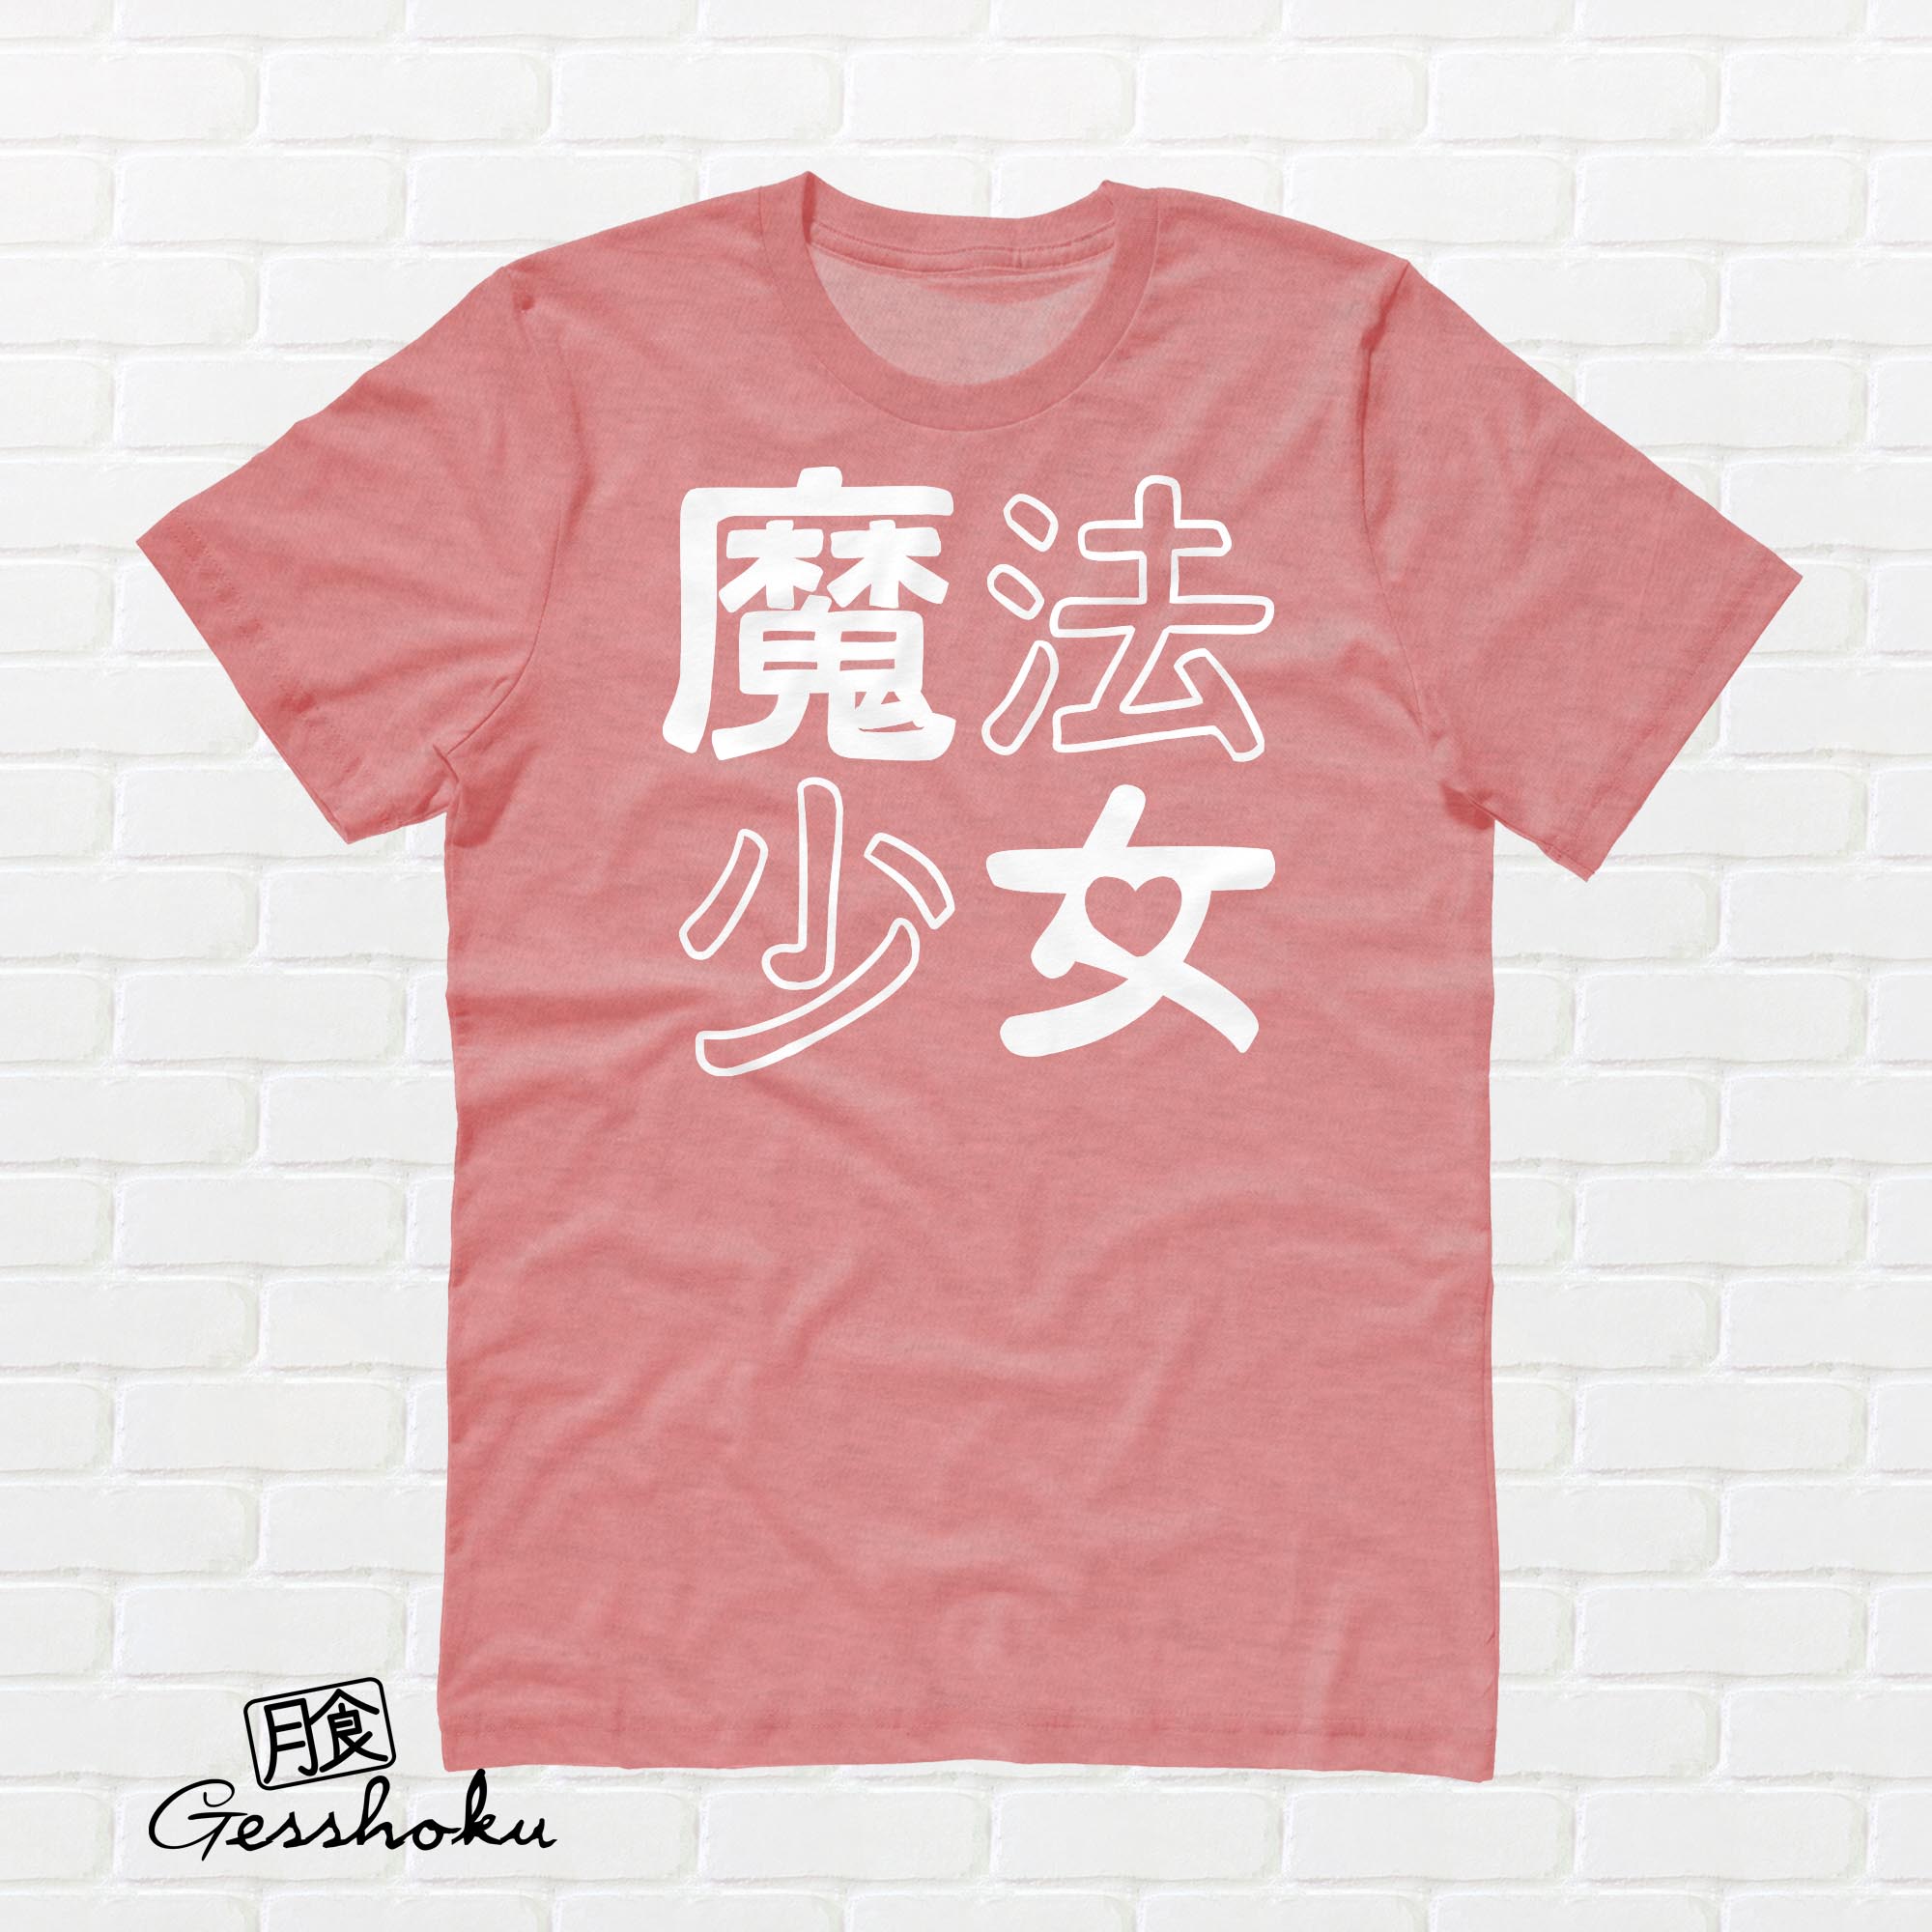 Mahou Shoujo T-shirt - Orange Cream